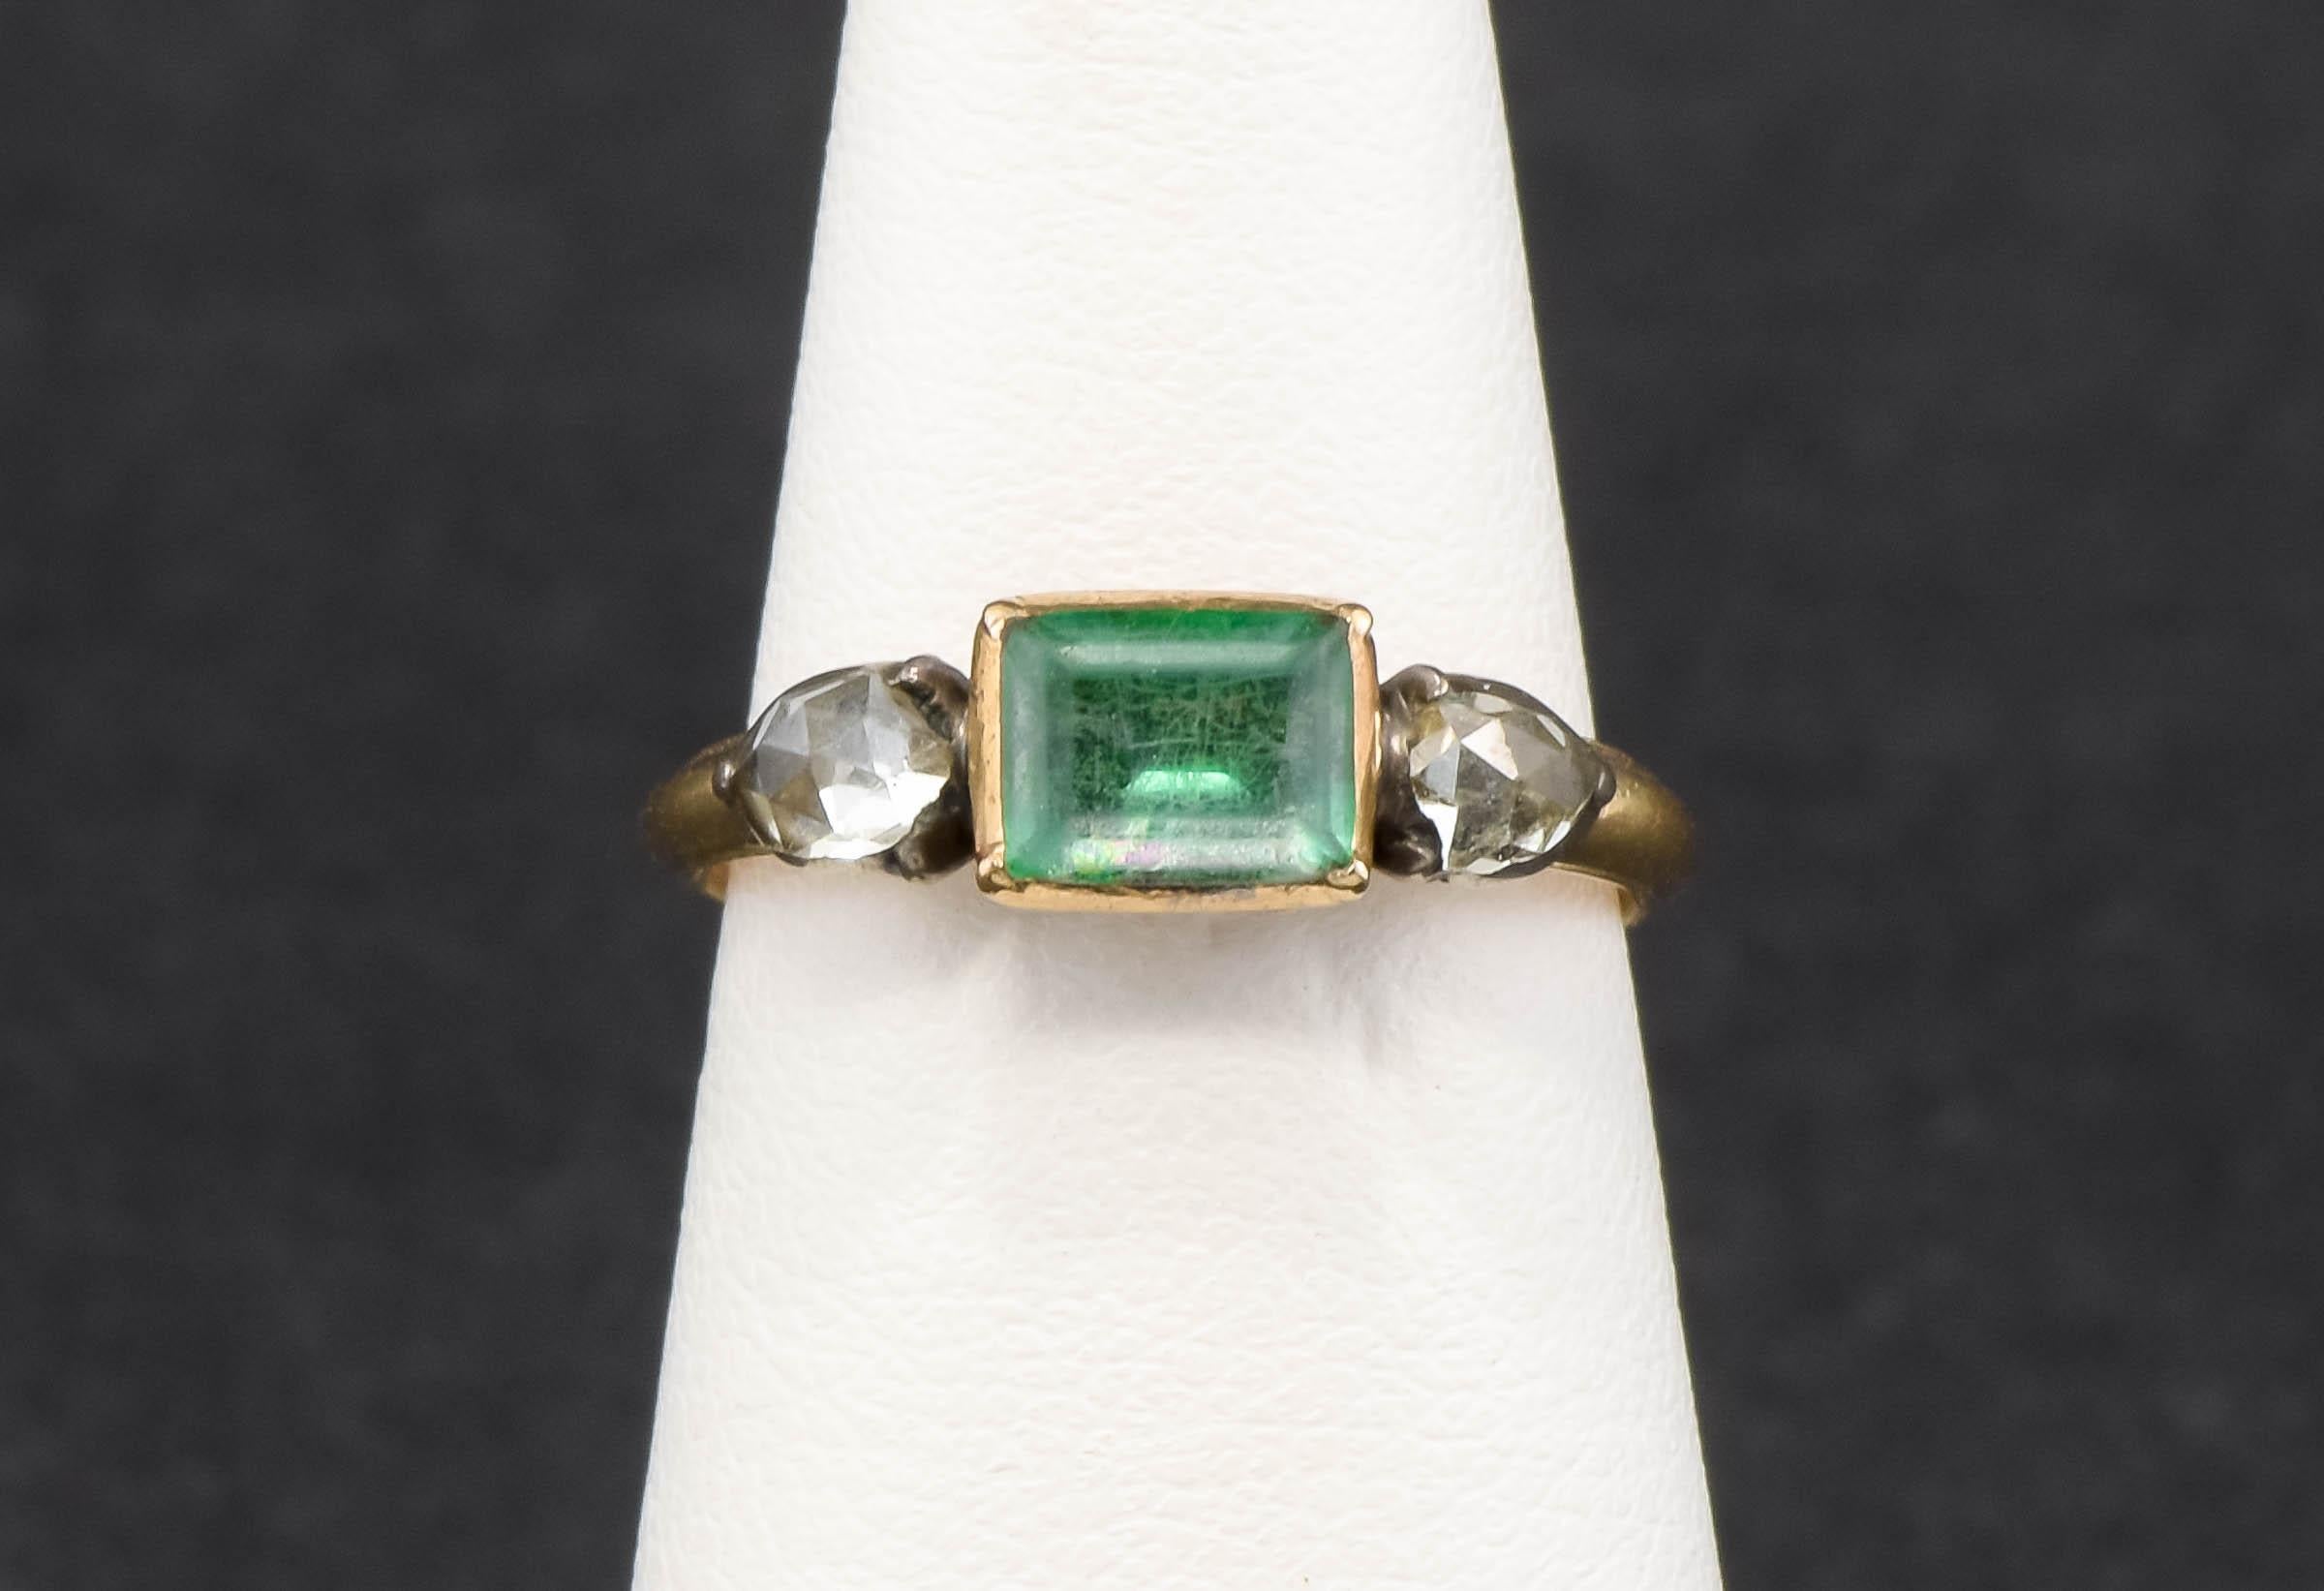 Der Ring ist aus 18-karätigem Gold gefertigt, die Diamanten sind in Silber eingefasst. In der Mitte des Rings befindet sich ein rechteckiger Bergkristall im Tafelschliff, der mit grüner Folie hinterlegt ist, flankiert von klobigen Diamanten im